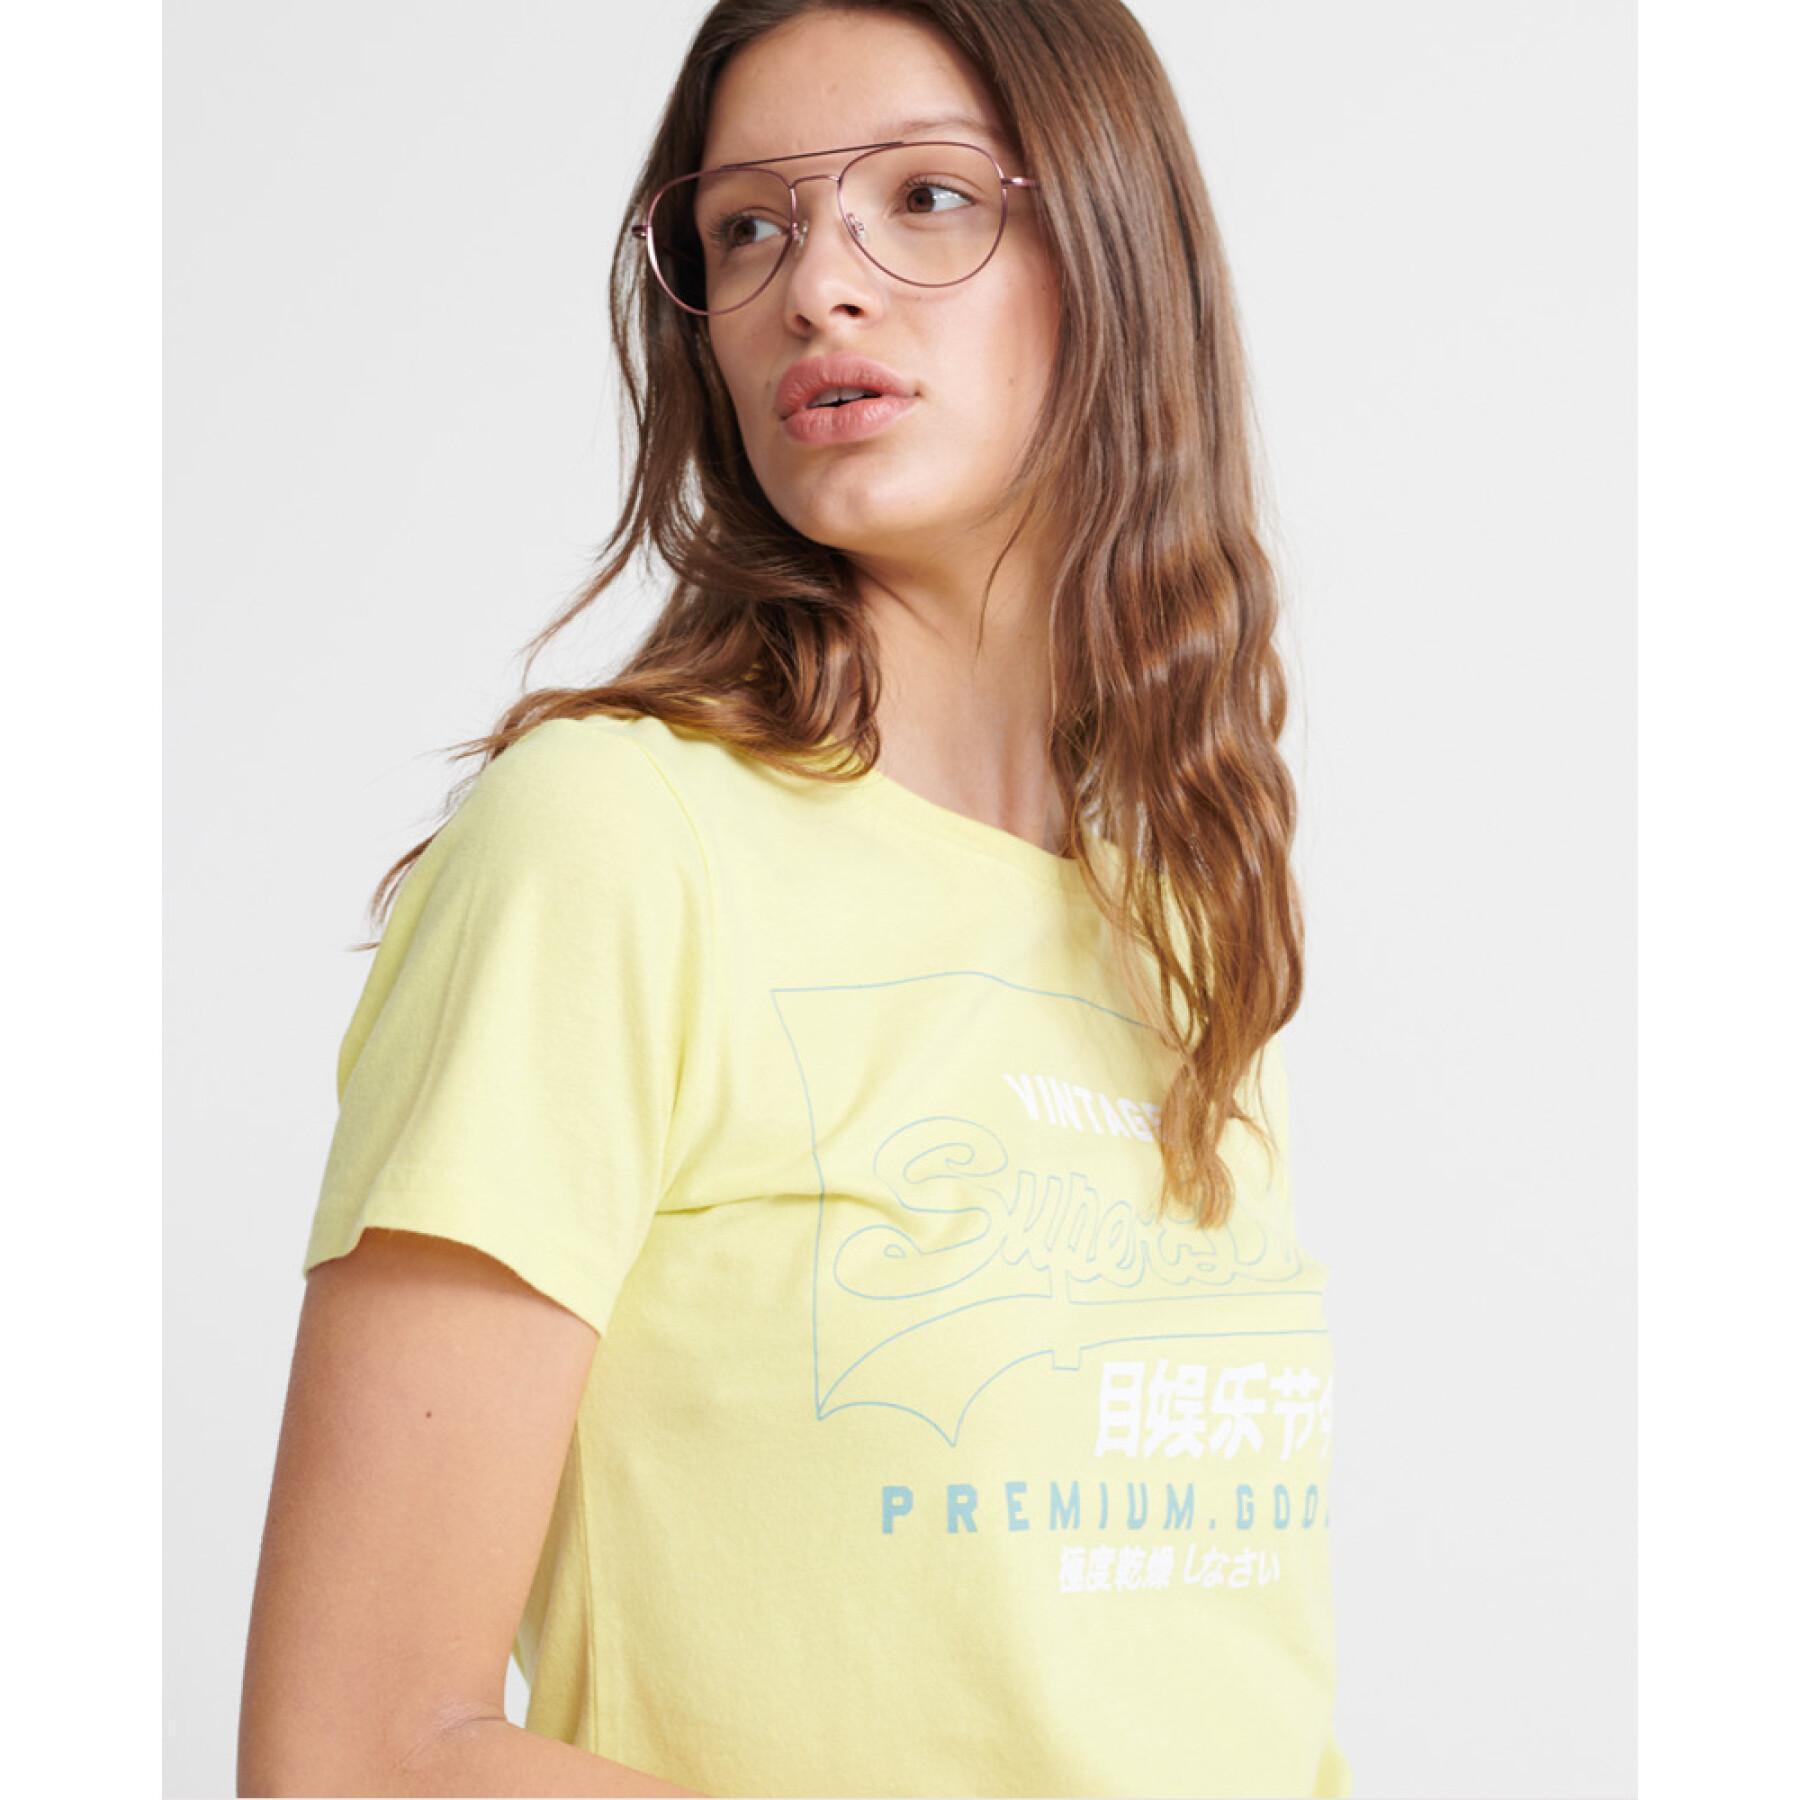 T-shirt da donna in cotone organico Superdry Premium Goods Label